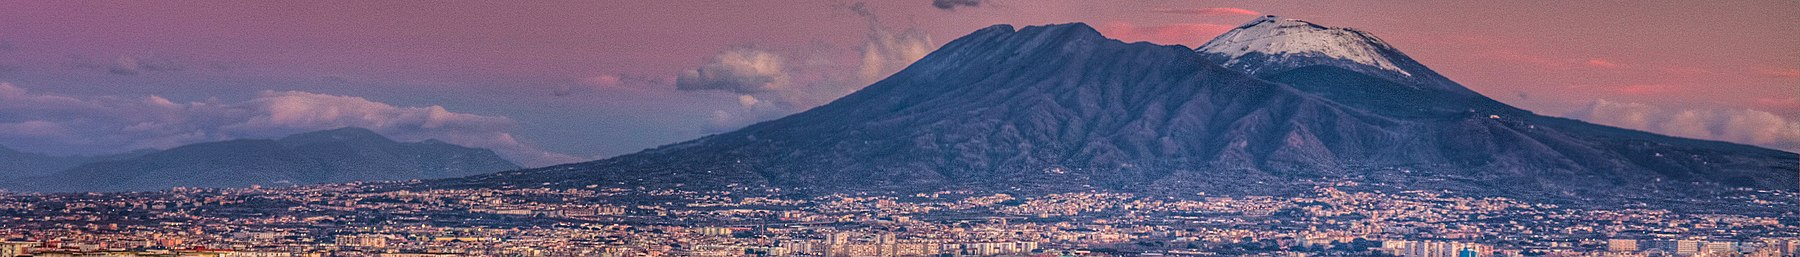 Mount Vesuvius Wikivoyage banner.jpg